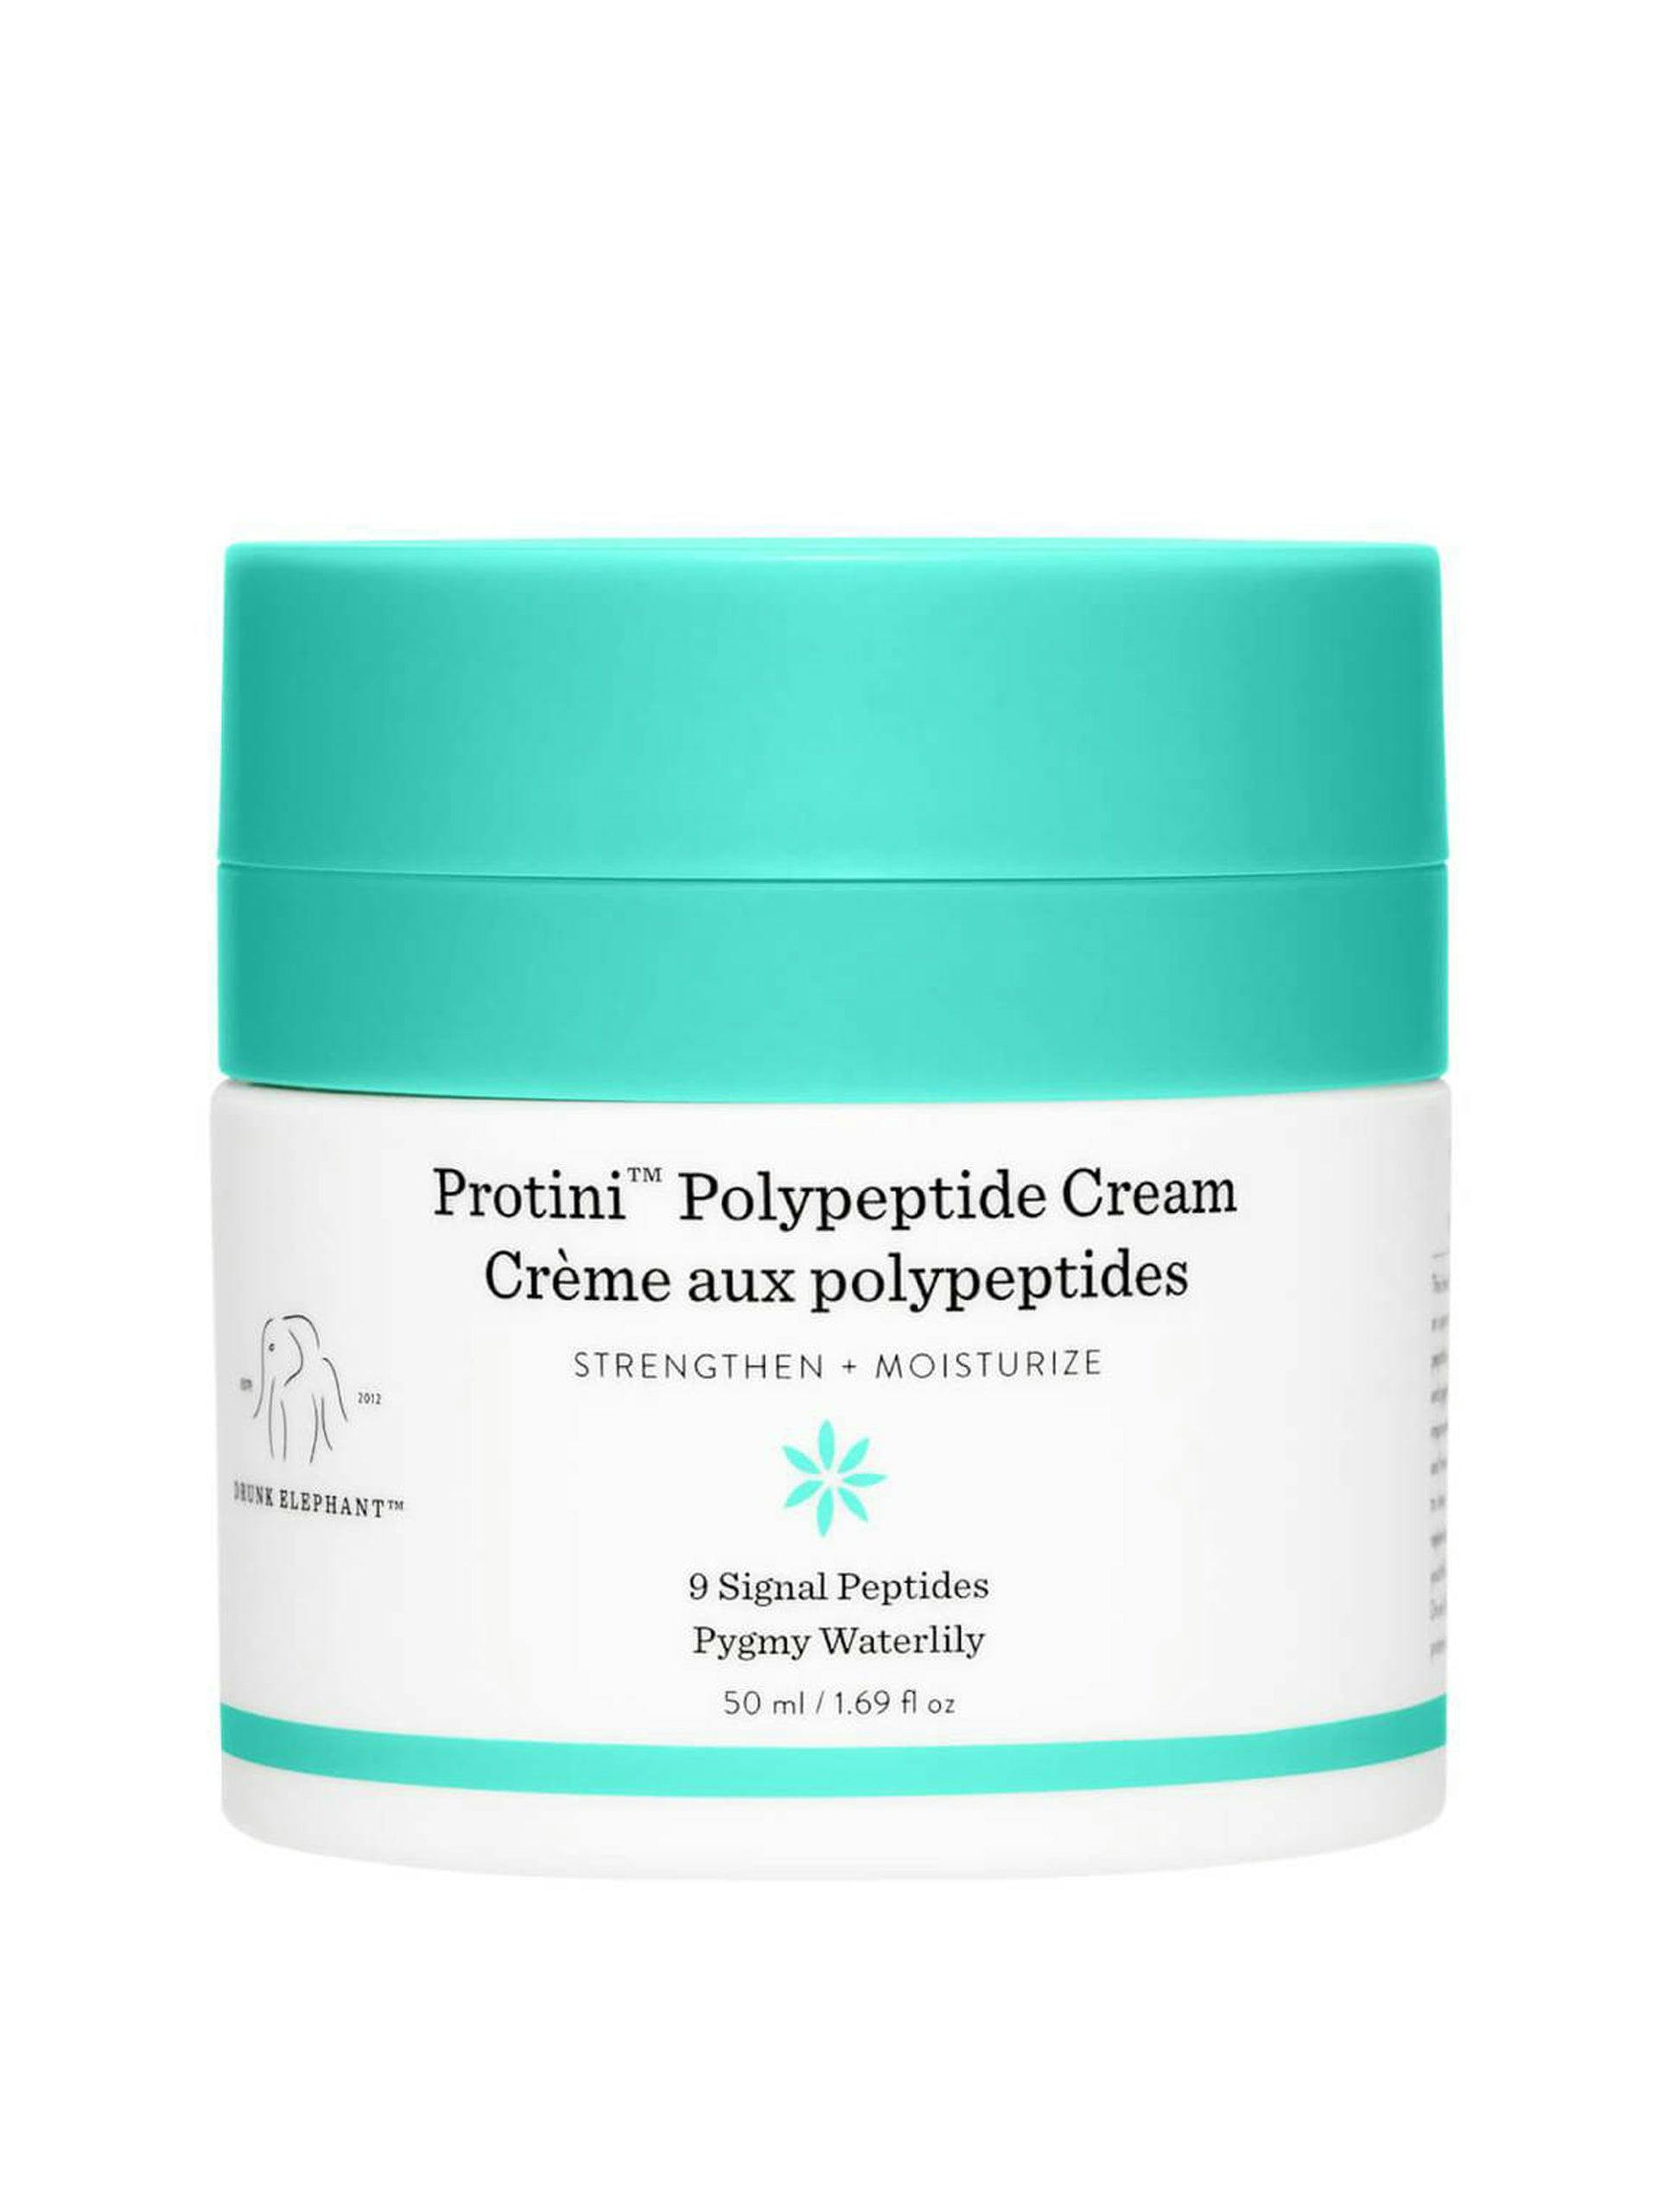 Protini™ Polypeptide Cream hydrating cream